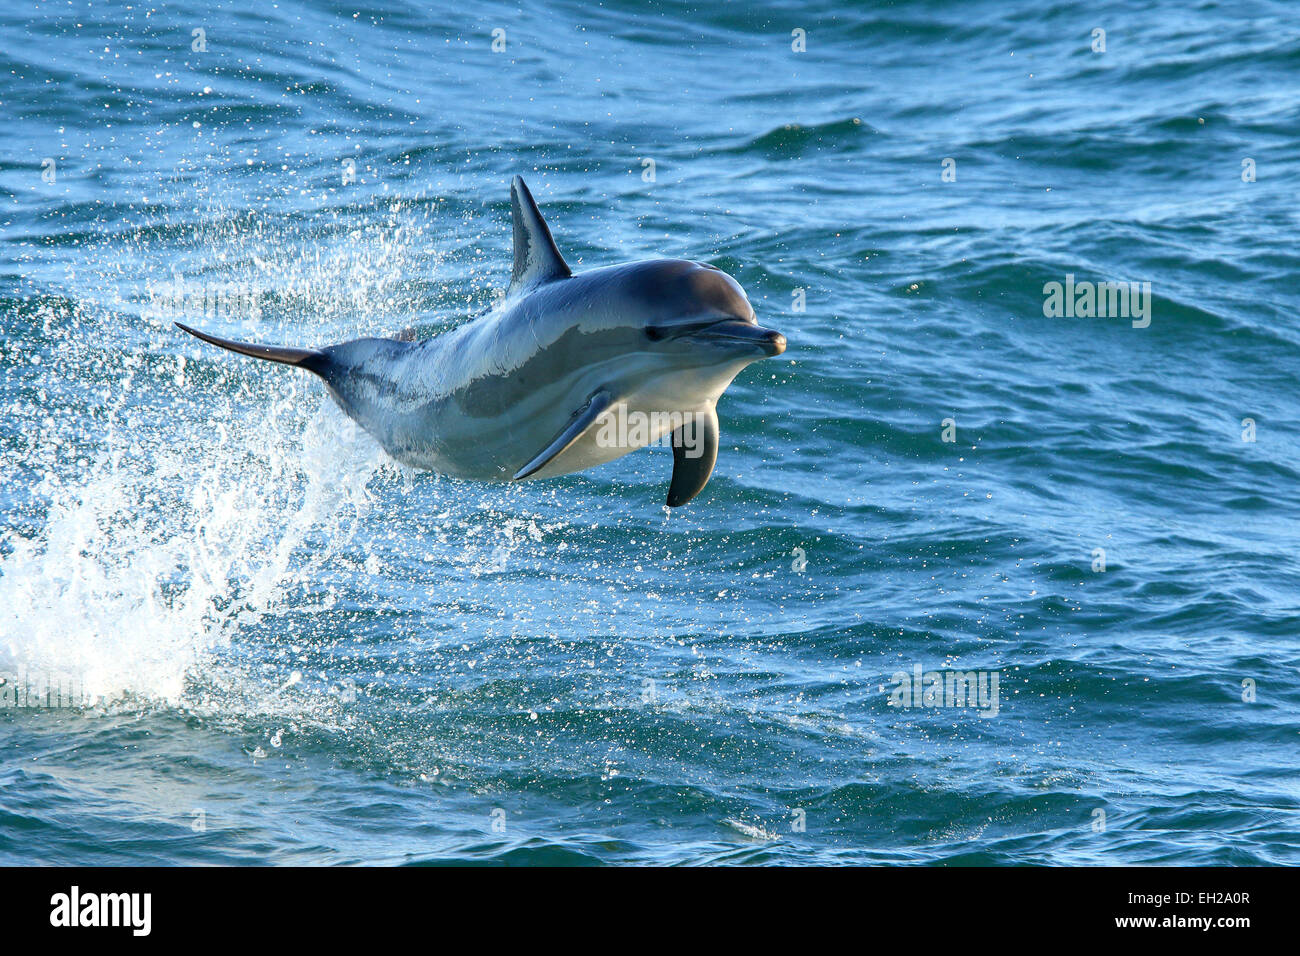 Dolphin largo largo picuda picuda, delfín común (Delphinus capensis) porpoising y saltando fuera del agua, en el Atlántico sur. Foto de stock